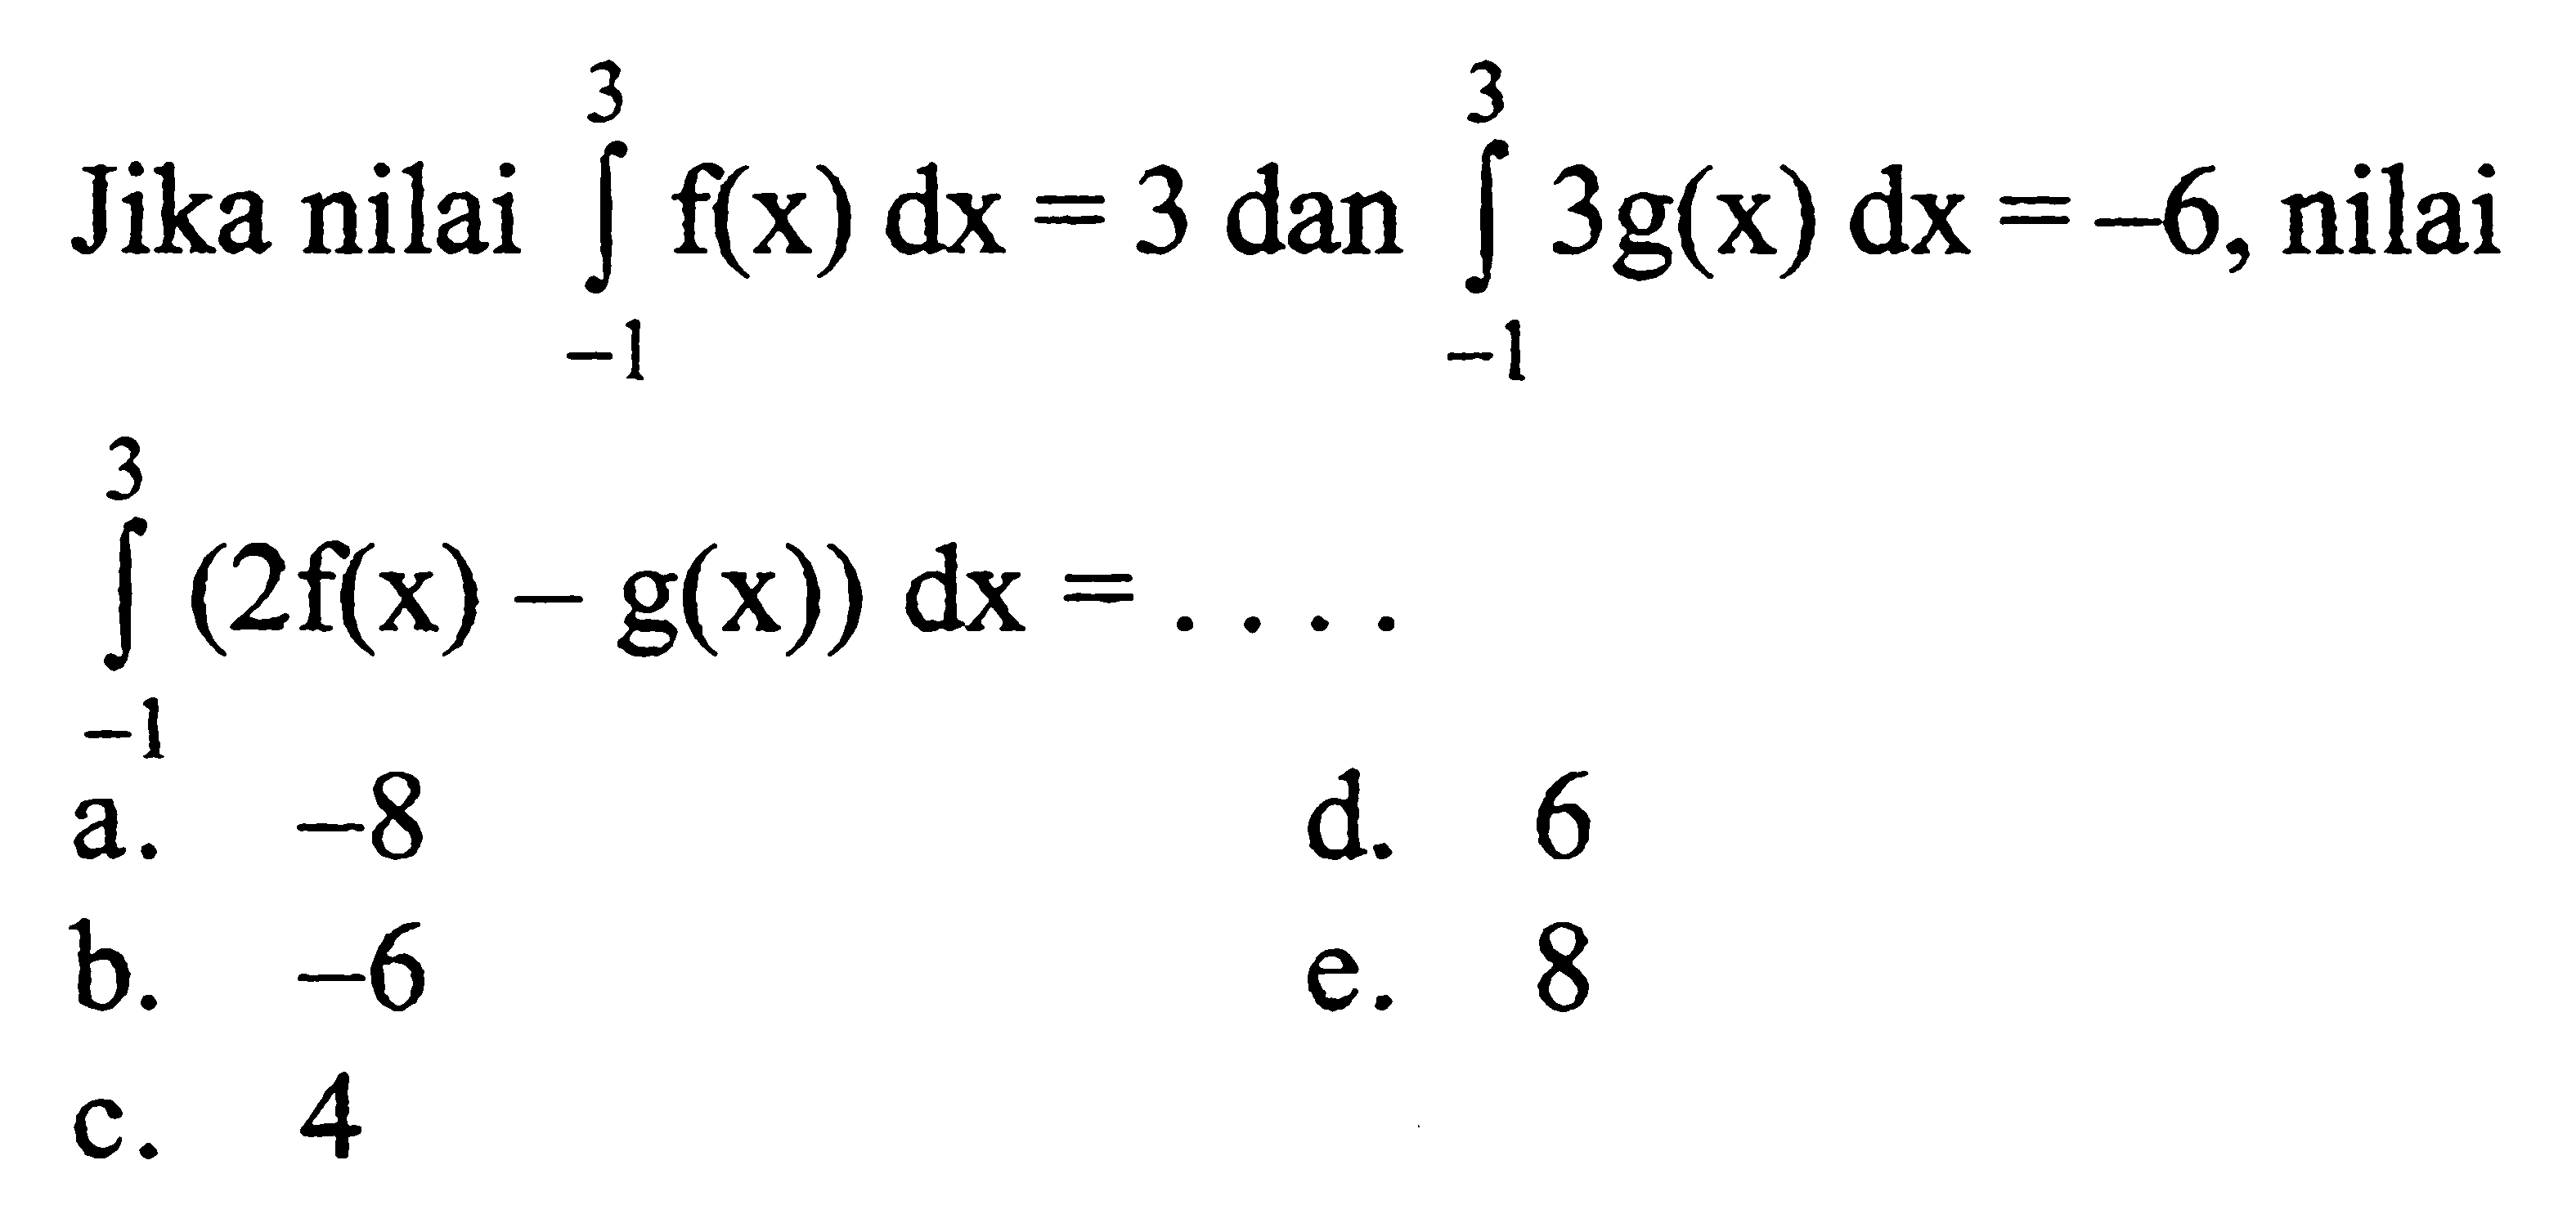 Jika nilai integral -1 3 f(x) dx=3 dan integral -1 3 g(x) dx=-6, nilai integral -1 3 (2f(x)-g(x)) dx=....